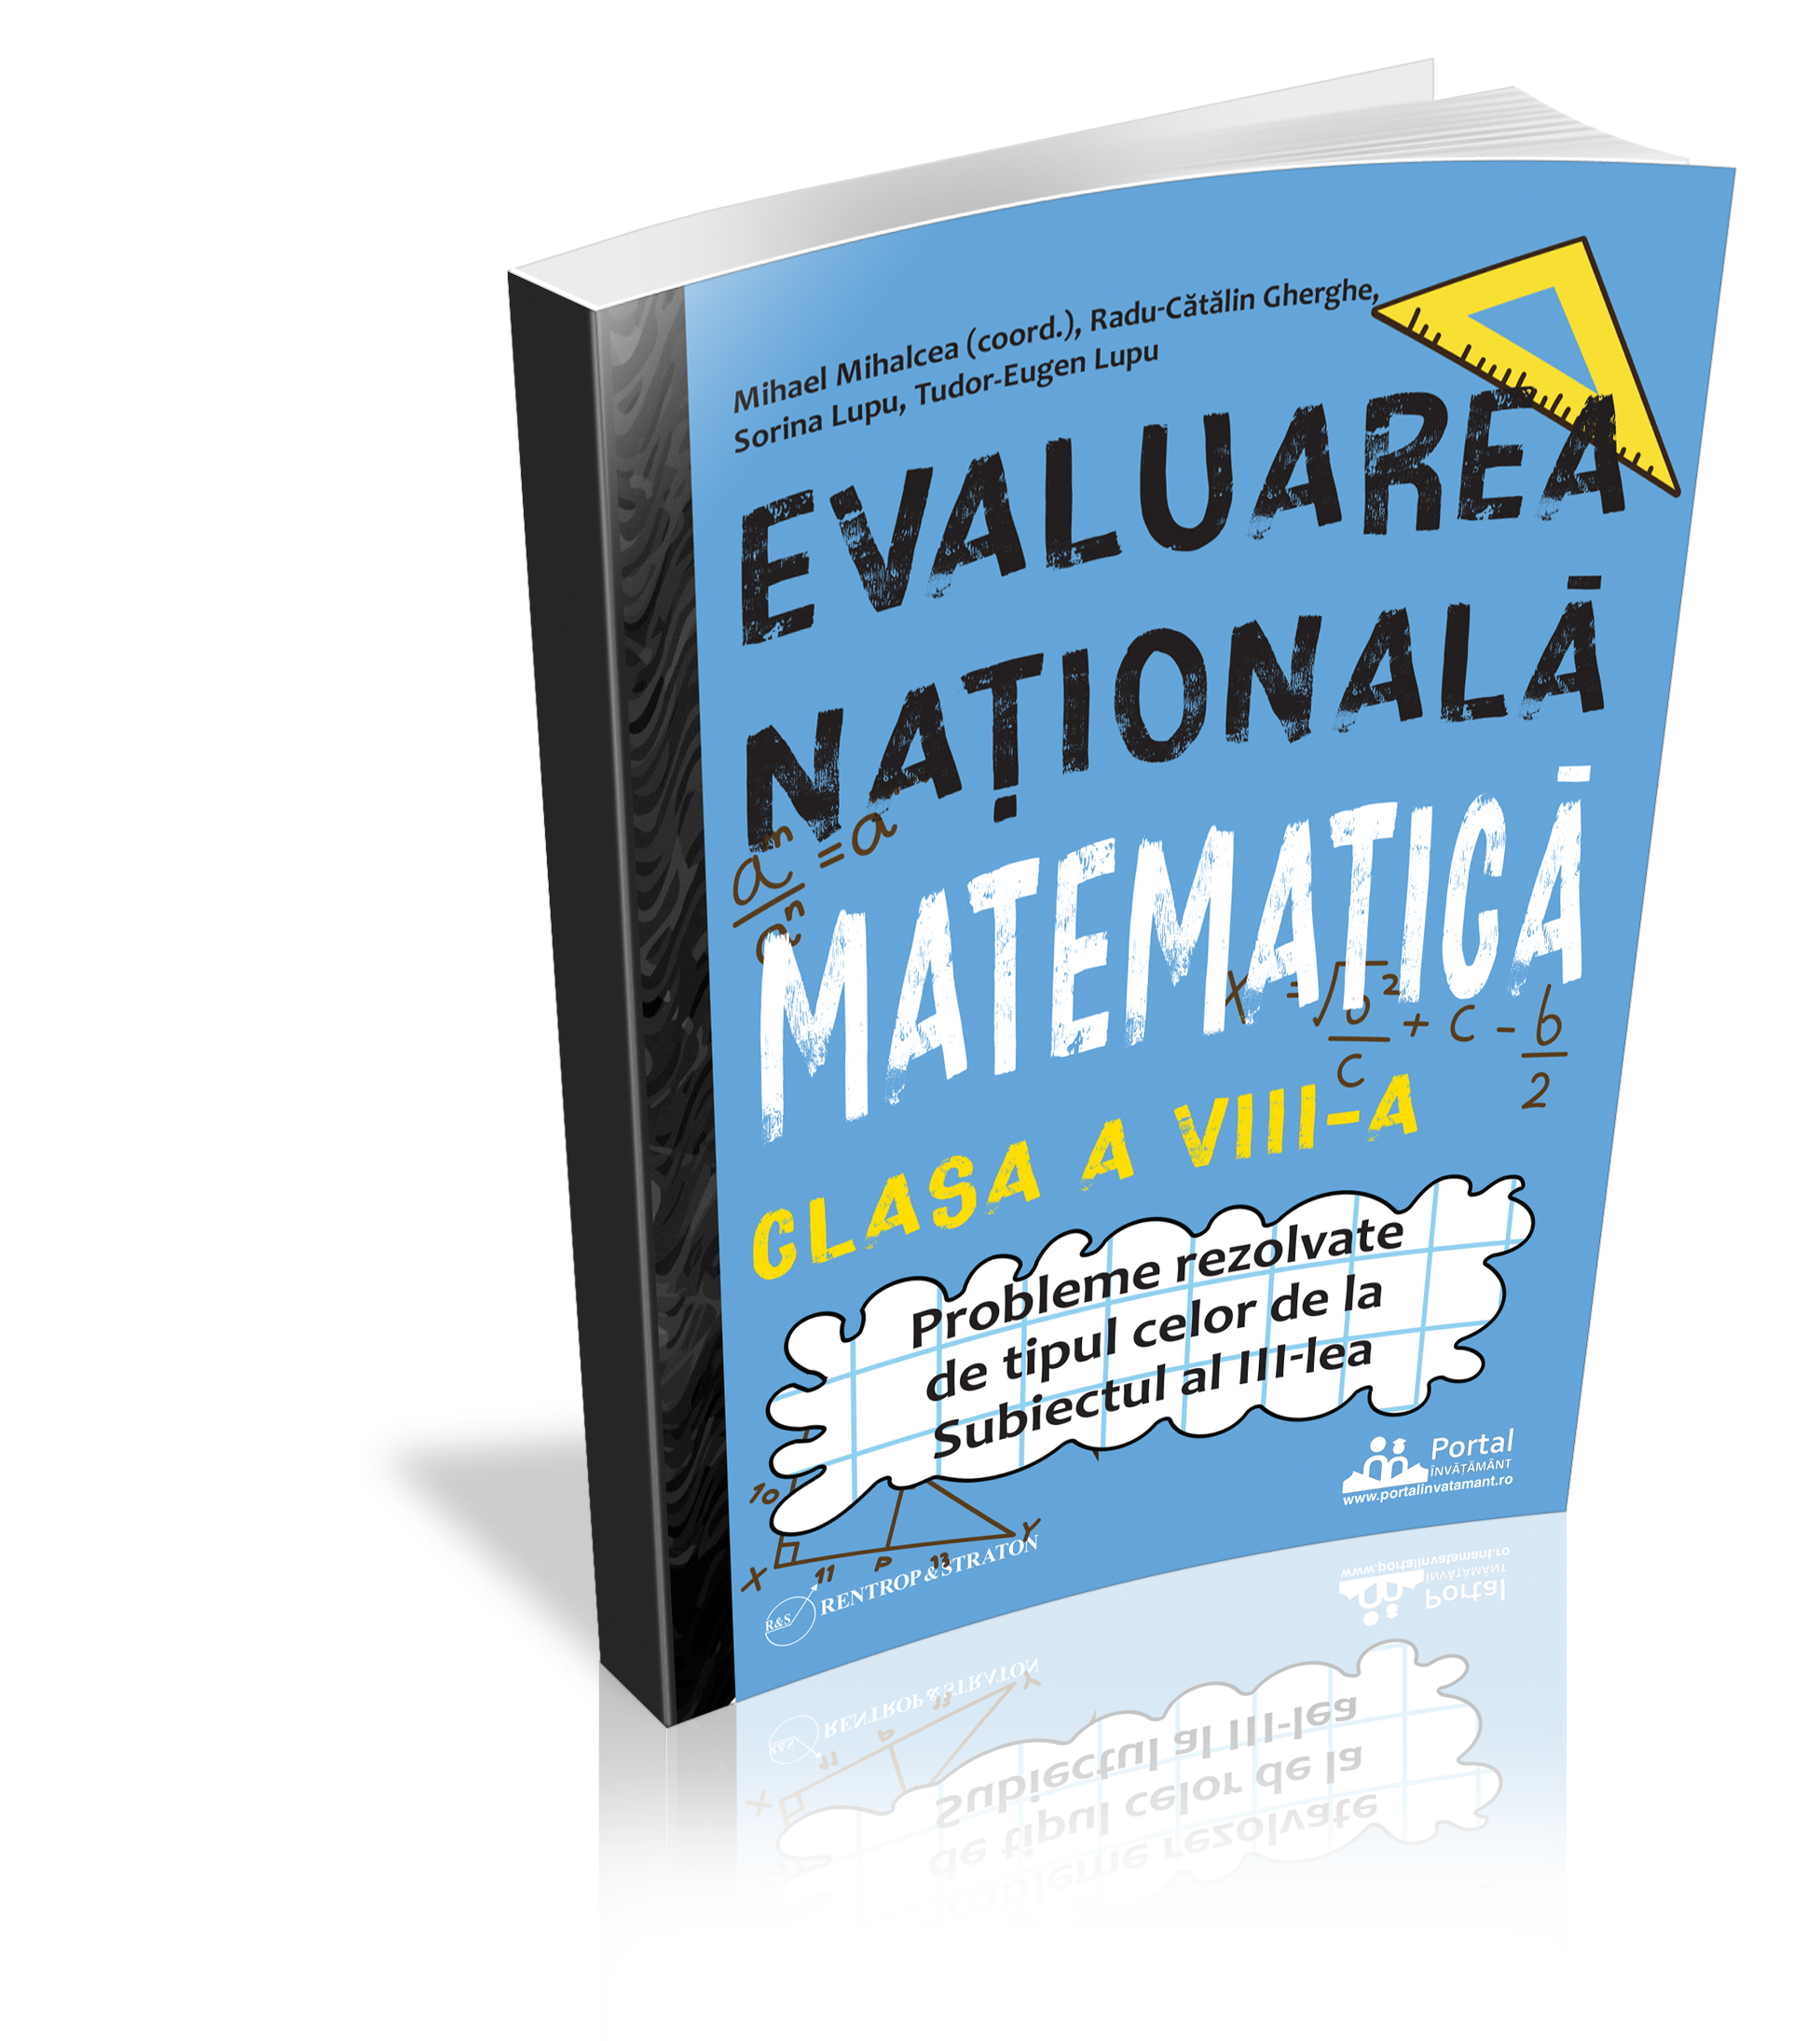 Evaluarea Nationala Matematica clasa a VIII-a - Probleme rezolvate tip Subiectul al III-lea